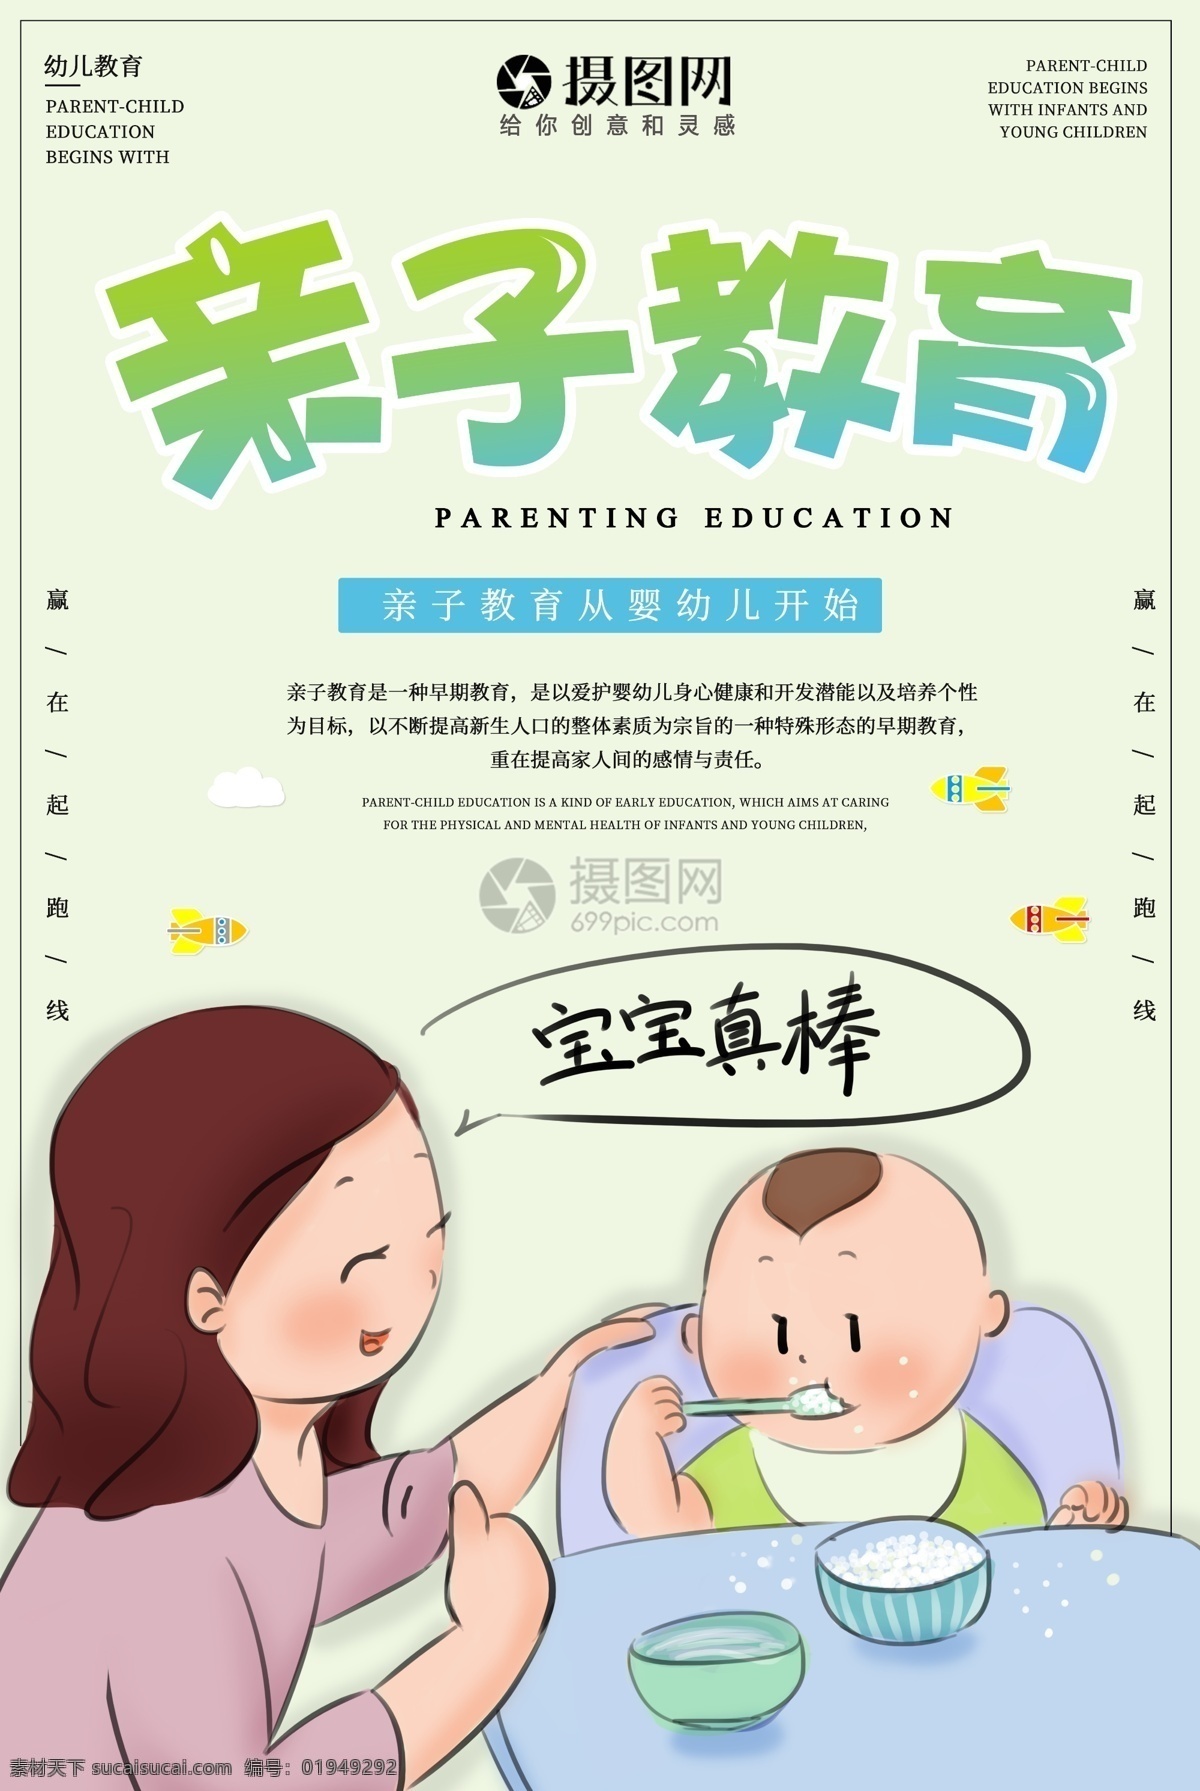 亲子教育 宣传海报 亲子 婴幼儿 教育 学习 母子 婴幼儿教育 海报